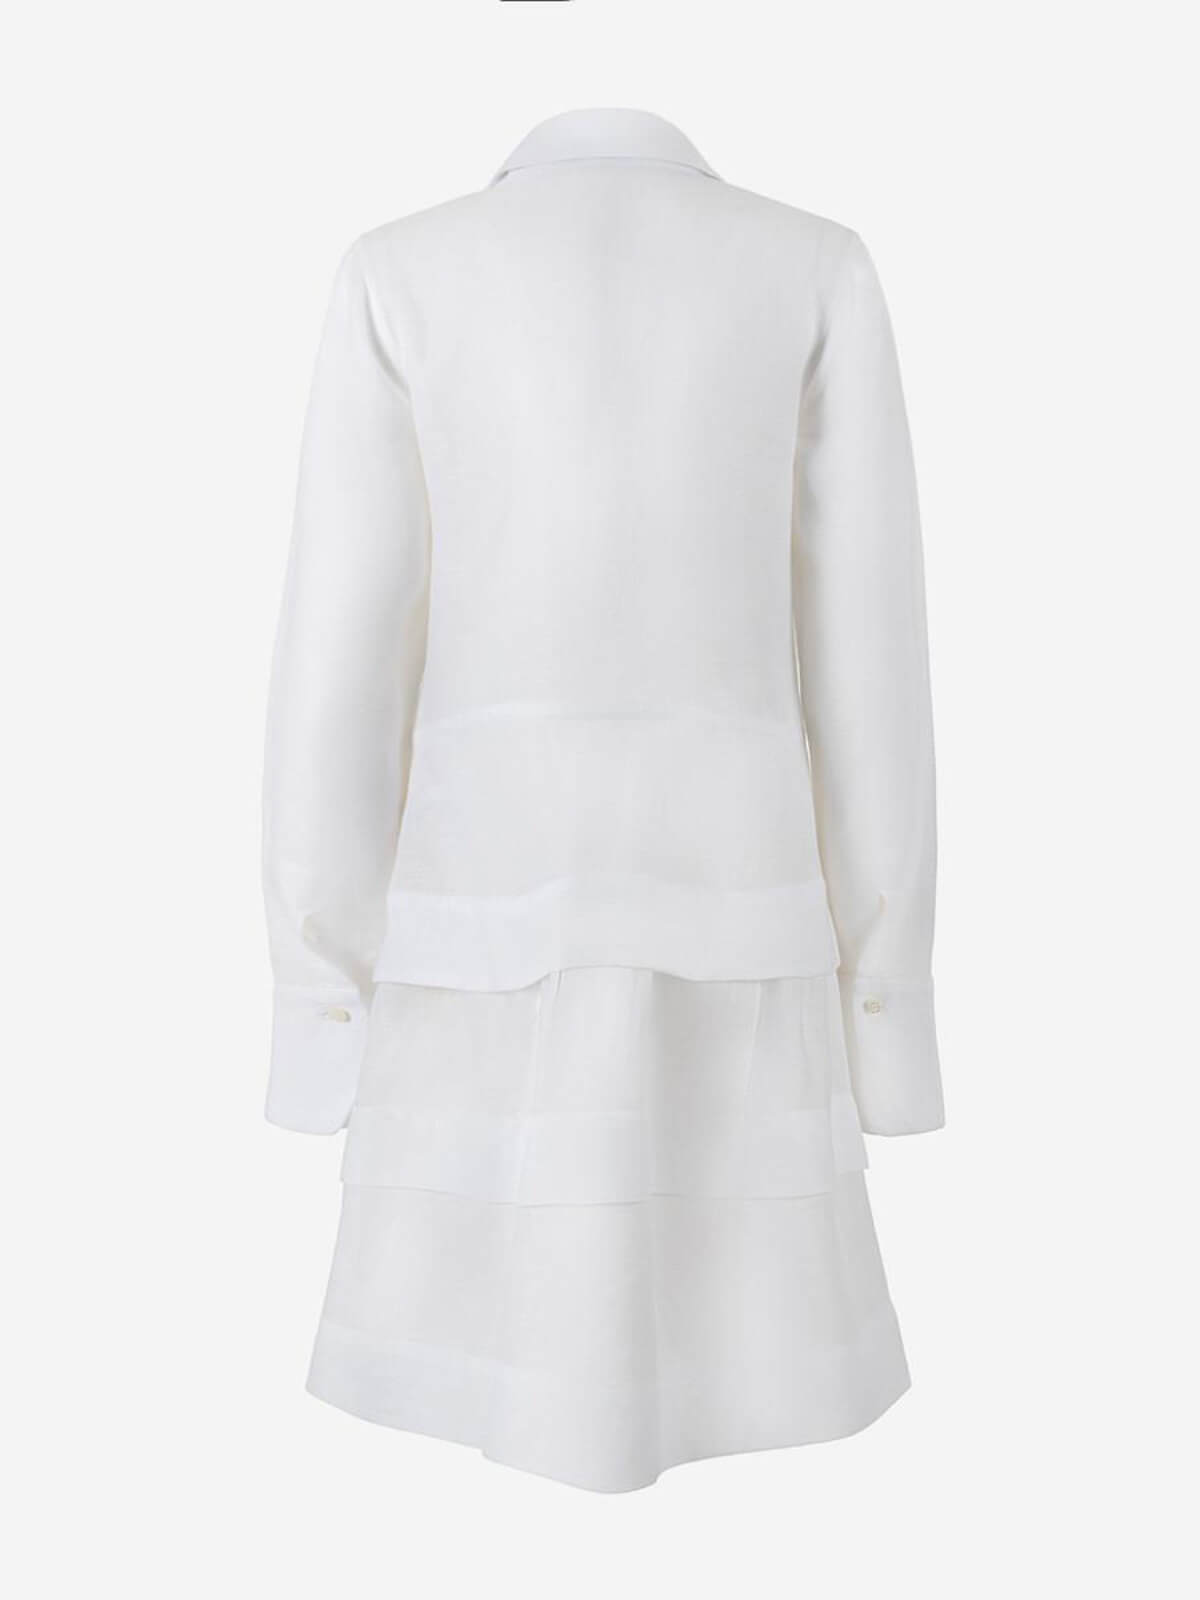 Abito Athina 100% Capri white linen dress back